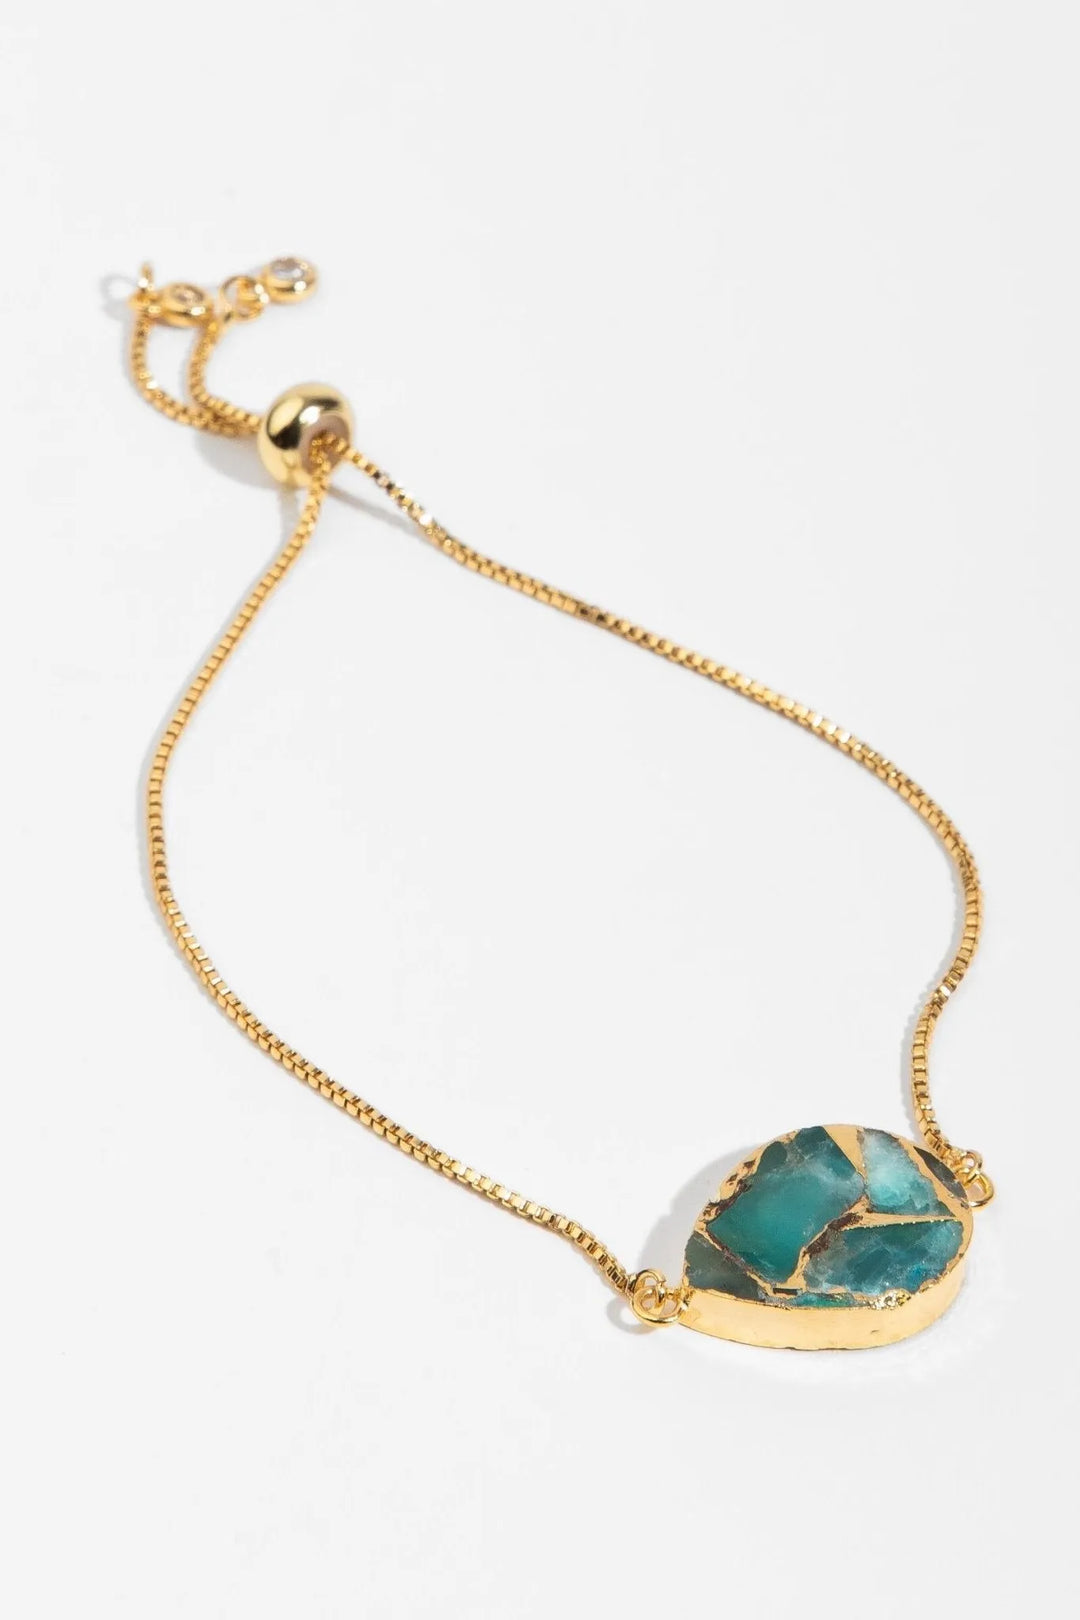 Mojave Pear Shape Gemstone Adjustable Bracelet Turquoise